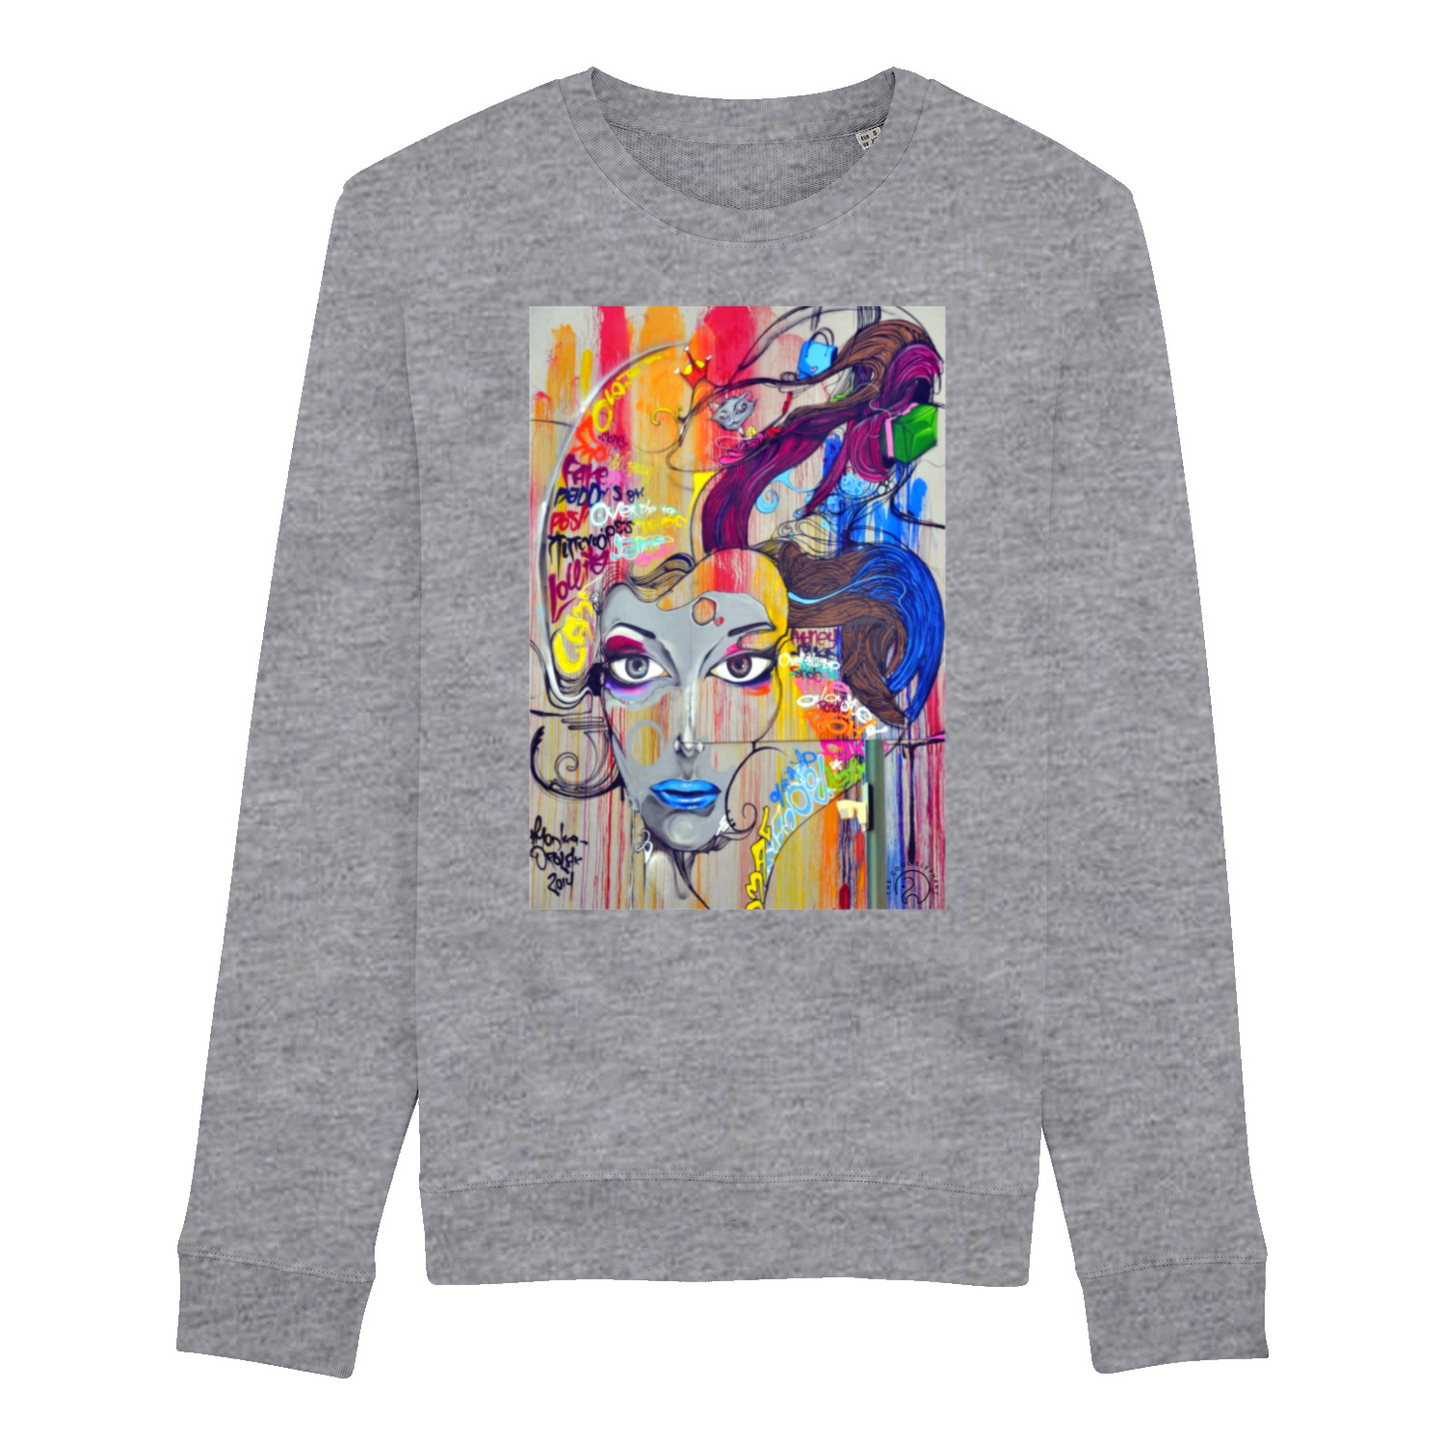 Sweatshirt "Painted Woman"